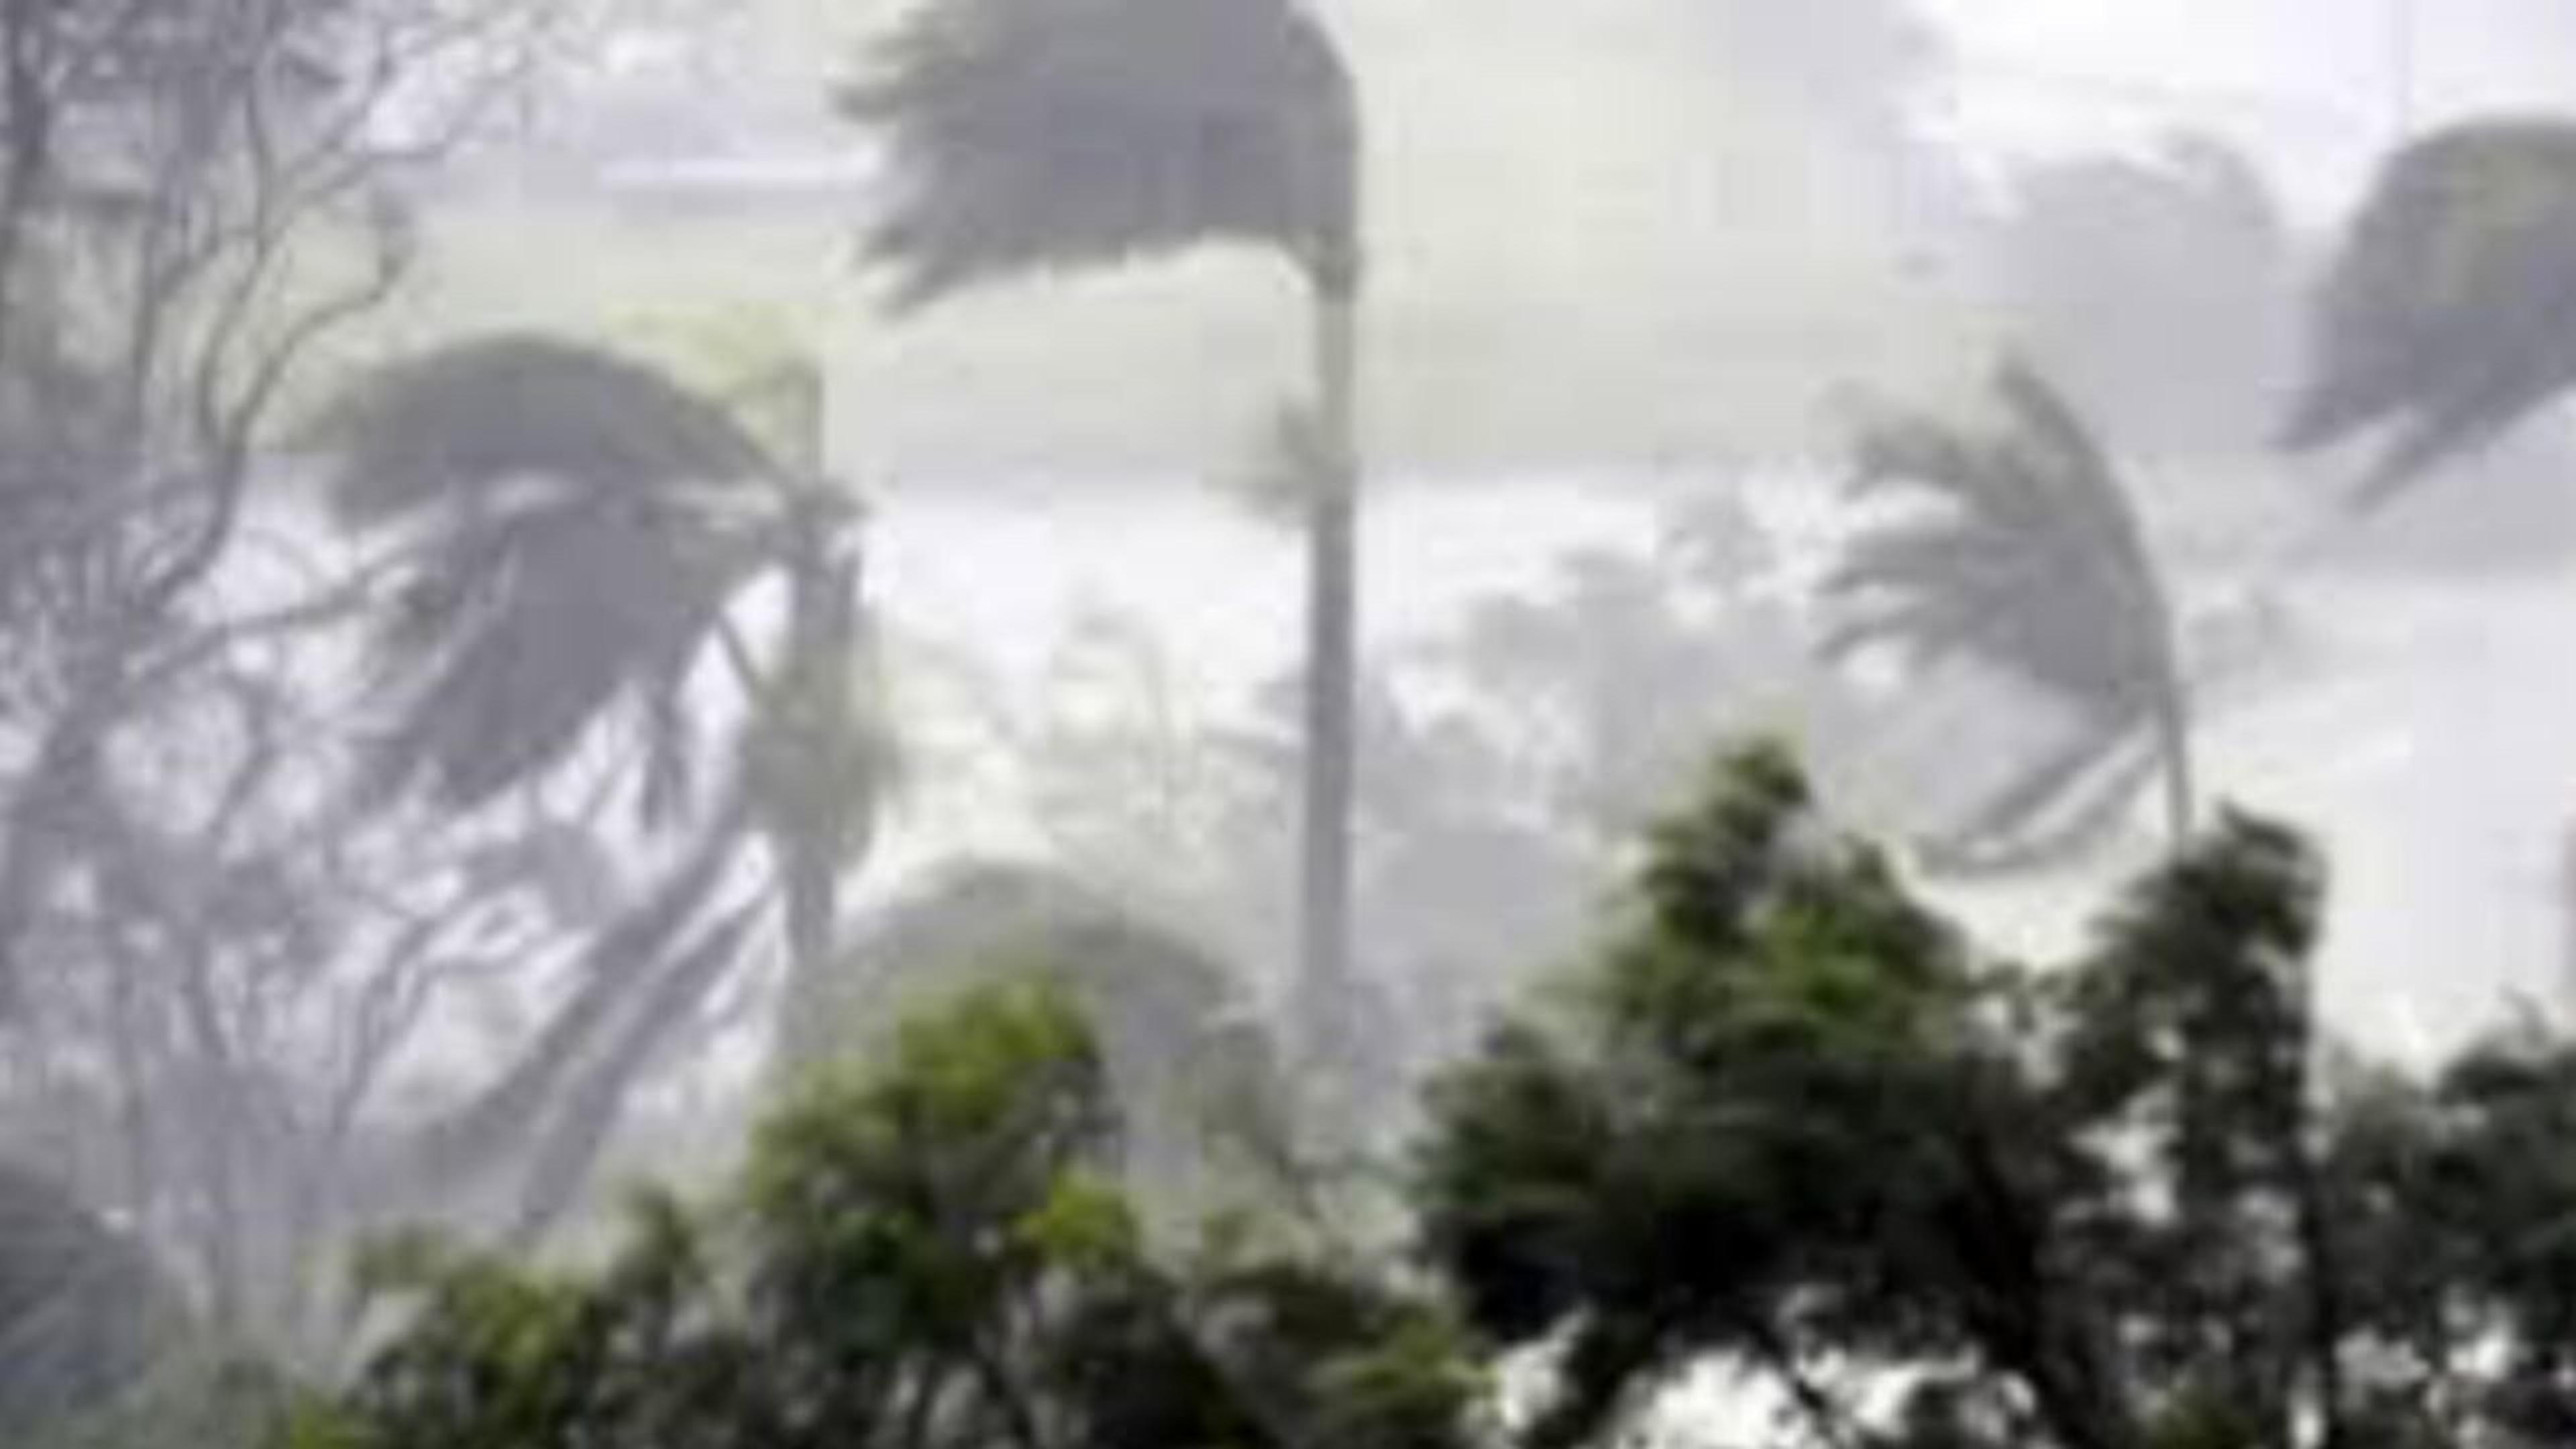 UP Rain alert: पश्चिमी विक्षोभ को लेकर आईएमडी की लेटेस्ट भविष्यवाणी, तेज हवाओं
के साथ झमाझम बारिश